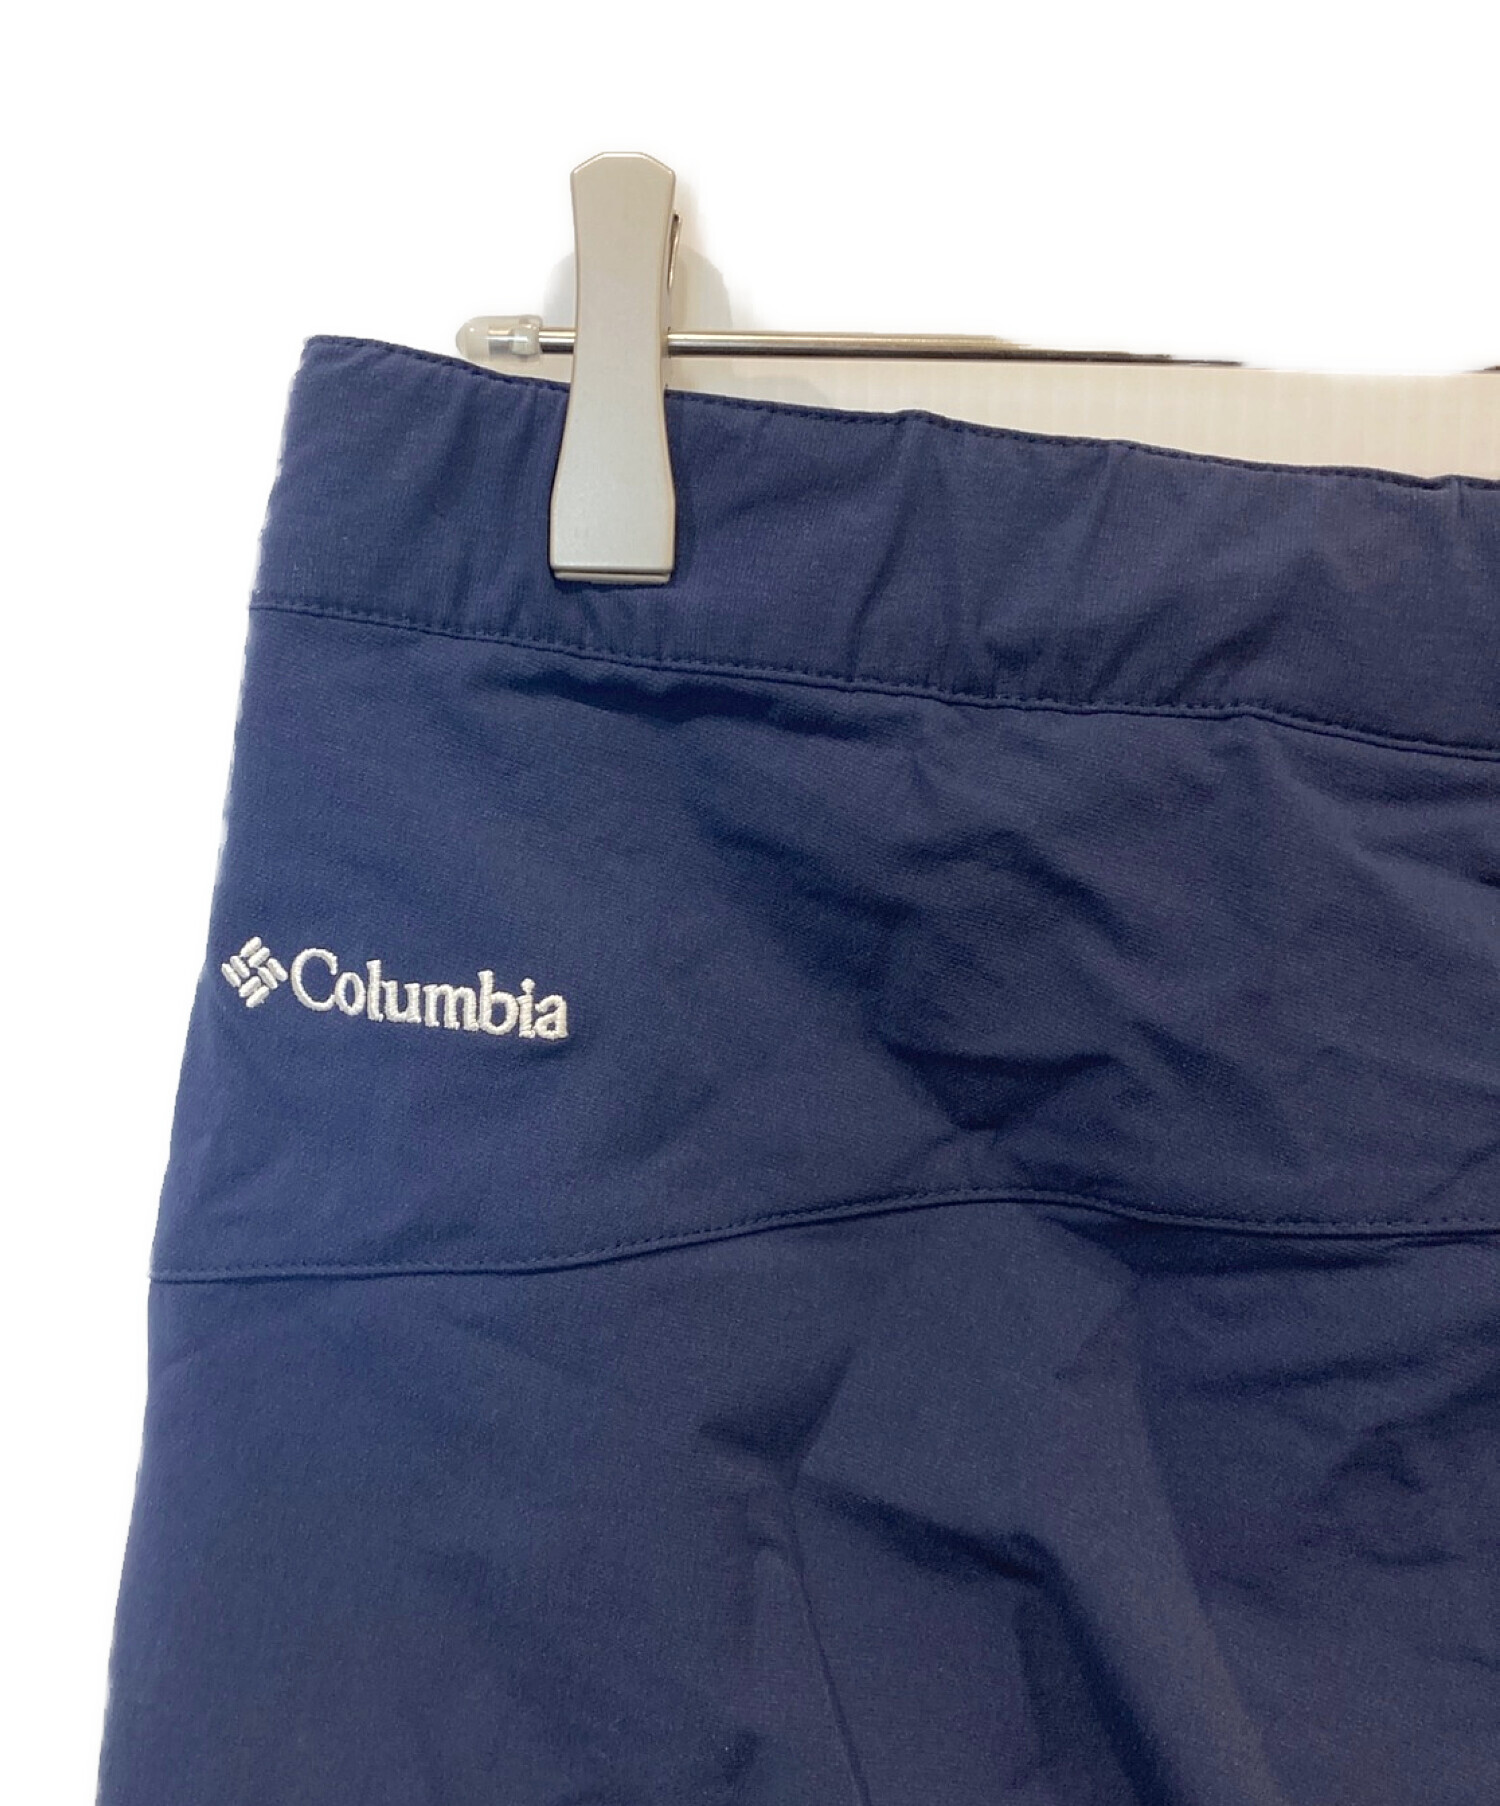 Columbia (コロンビア) クライミングパンツ ネイビー サイズ:L